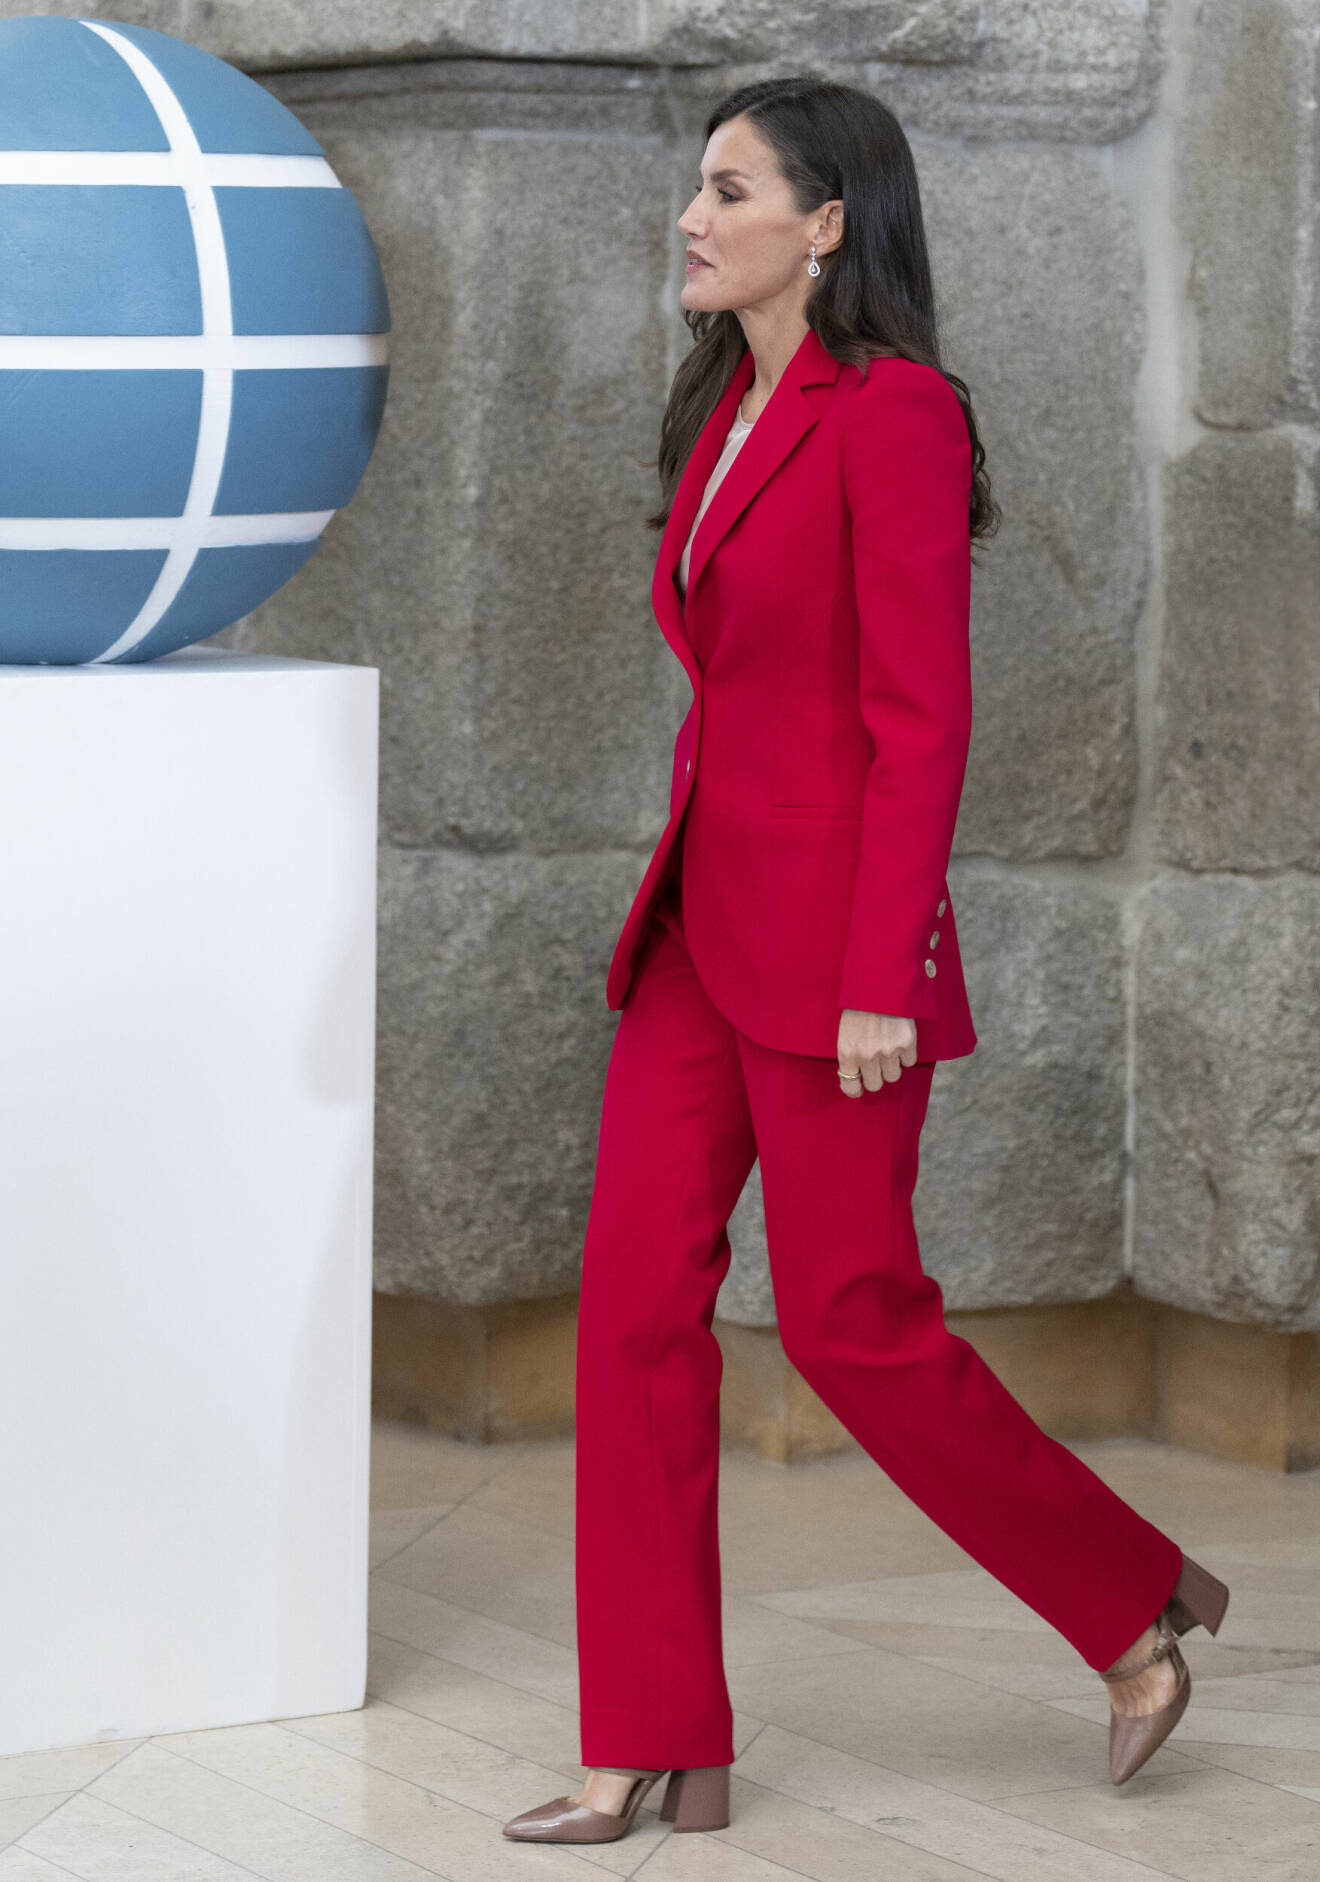 Drottning Letizia av Spanien iklädd röd kostym.